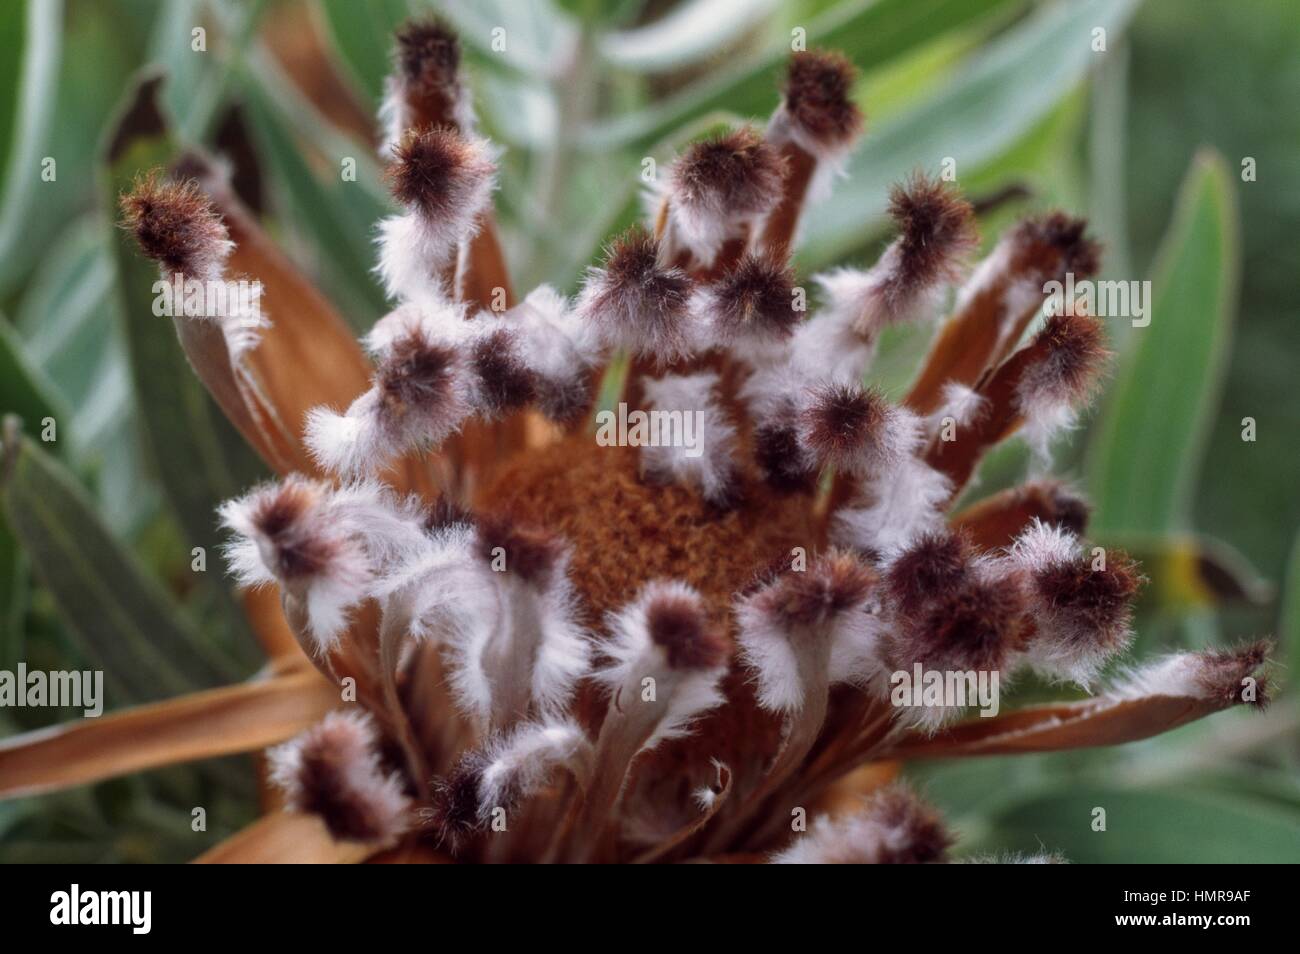 Sugarbushes (Protea repens), Proteaceae. Stock Photo